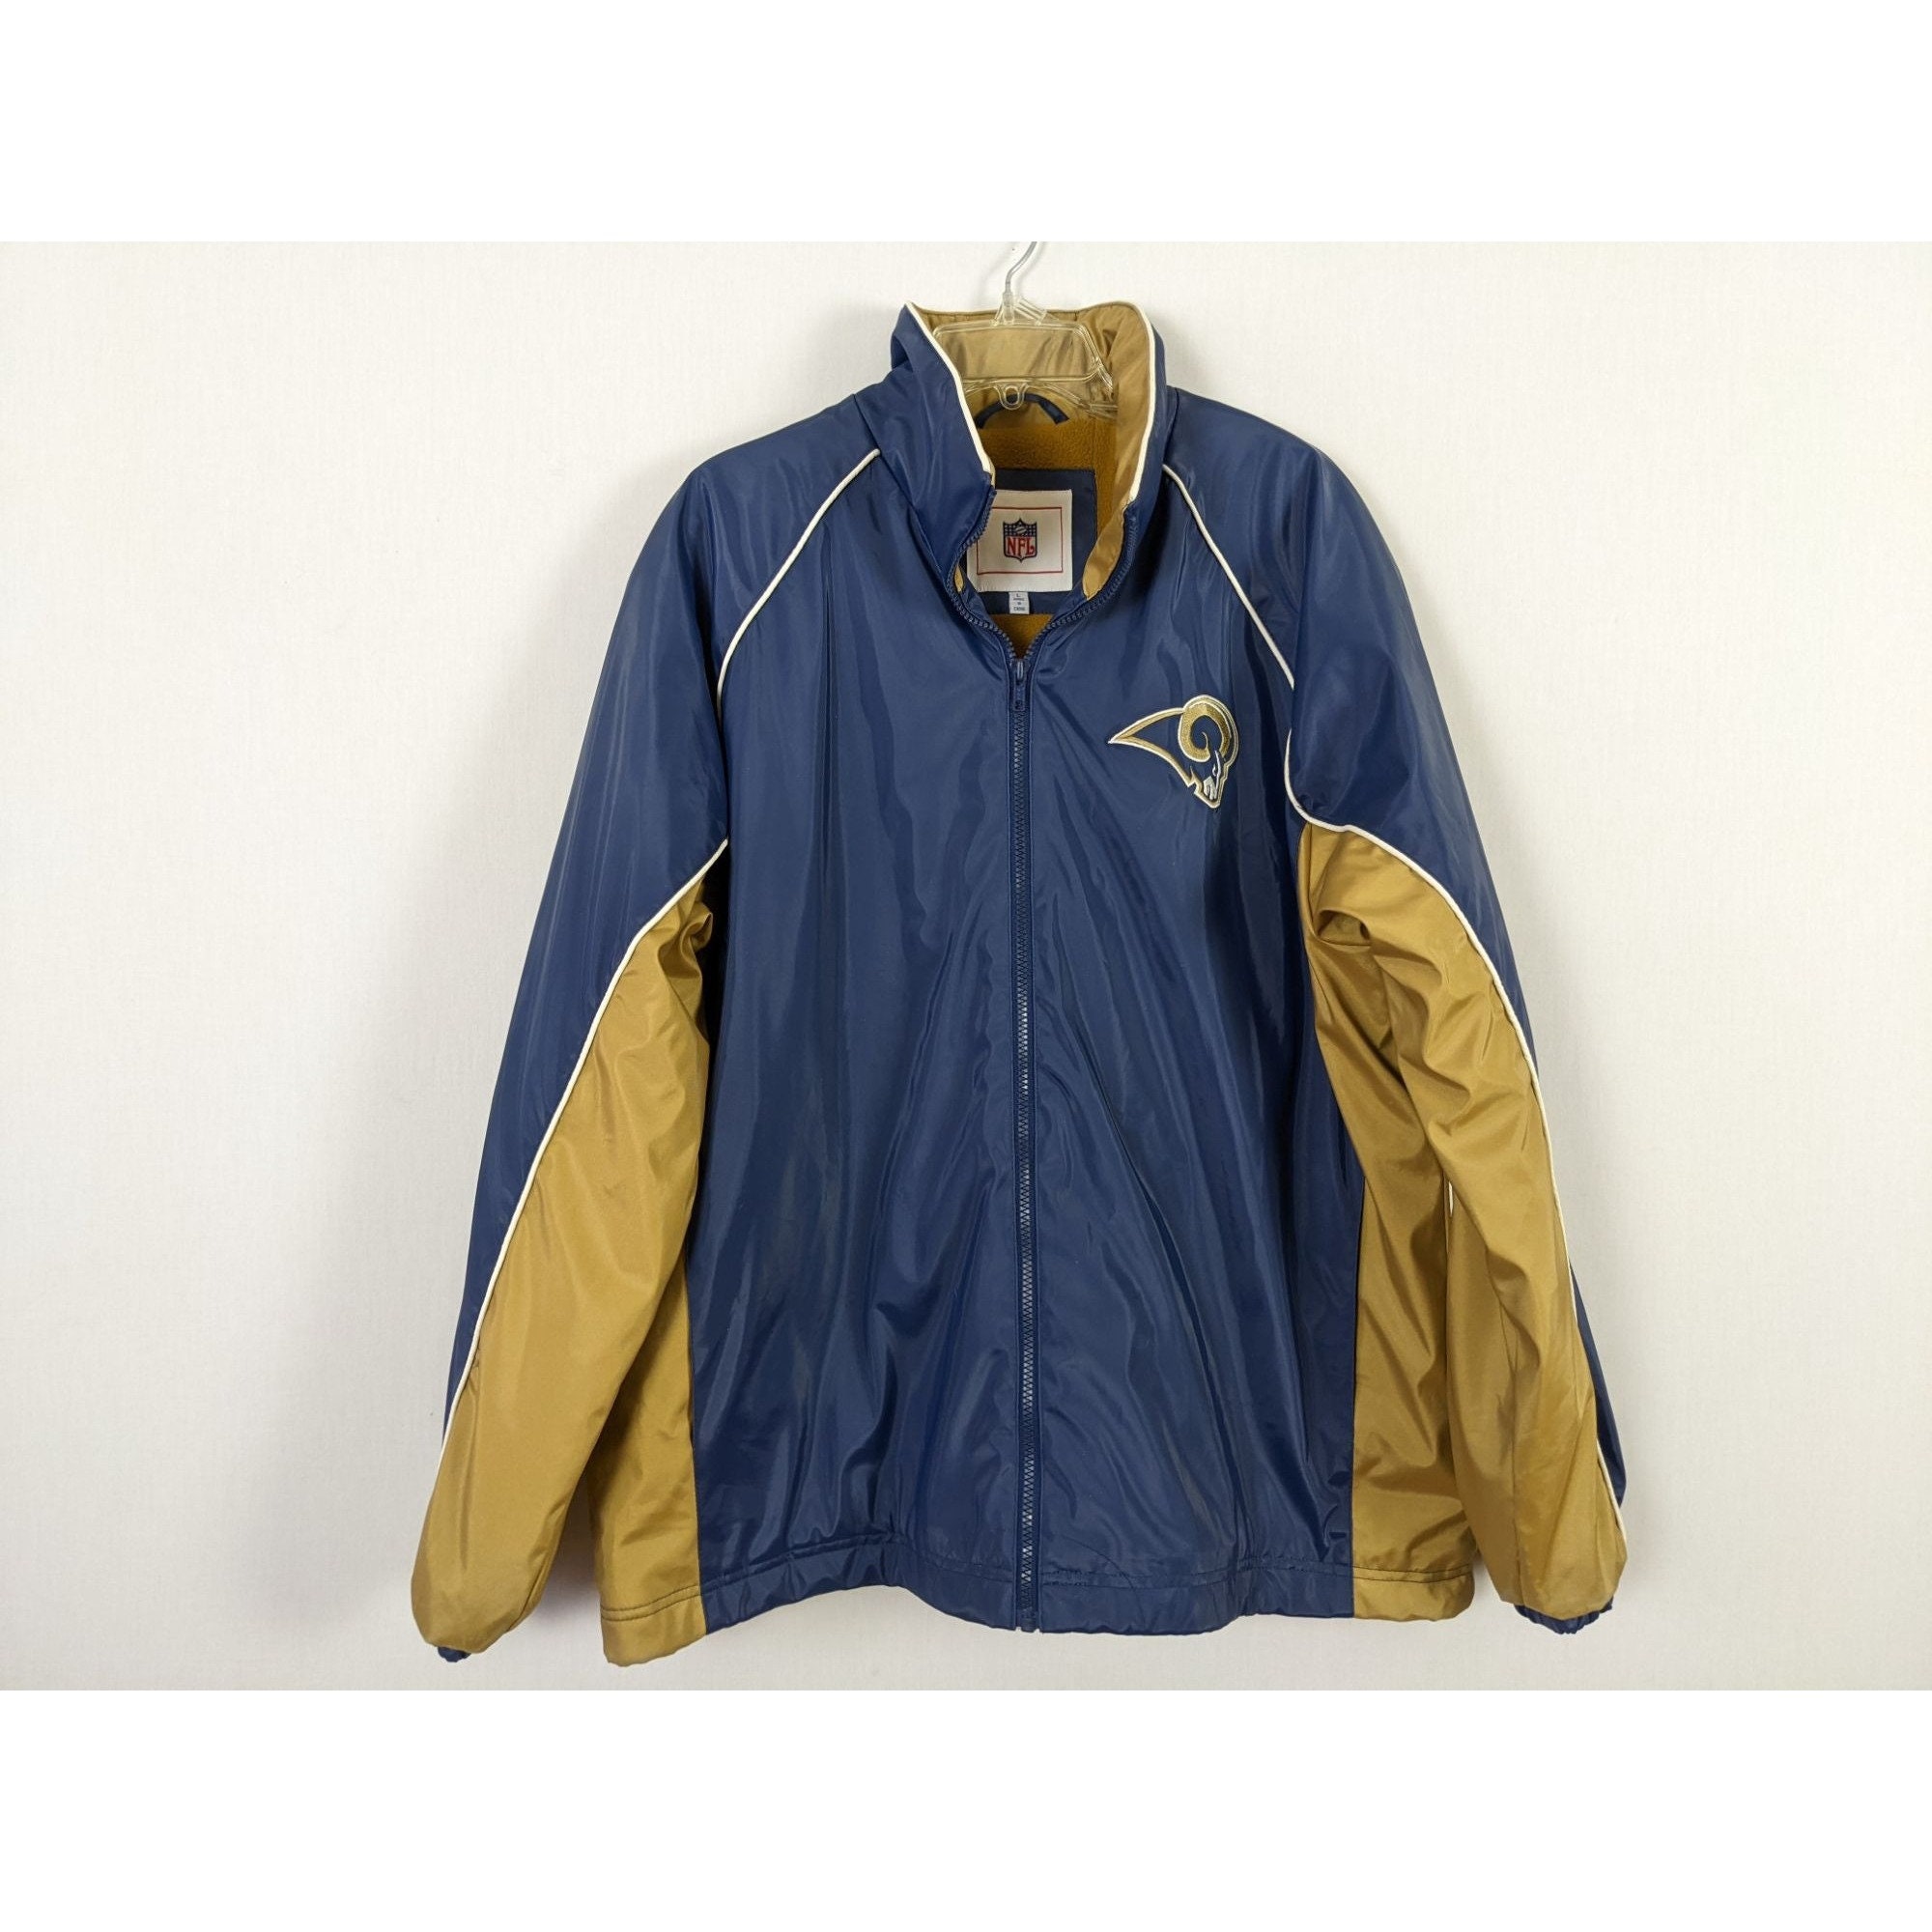 Vintage NFL - St. Louis 'Rams' Big Logo Faux Leather Jacket 1990's